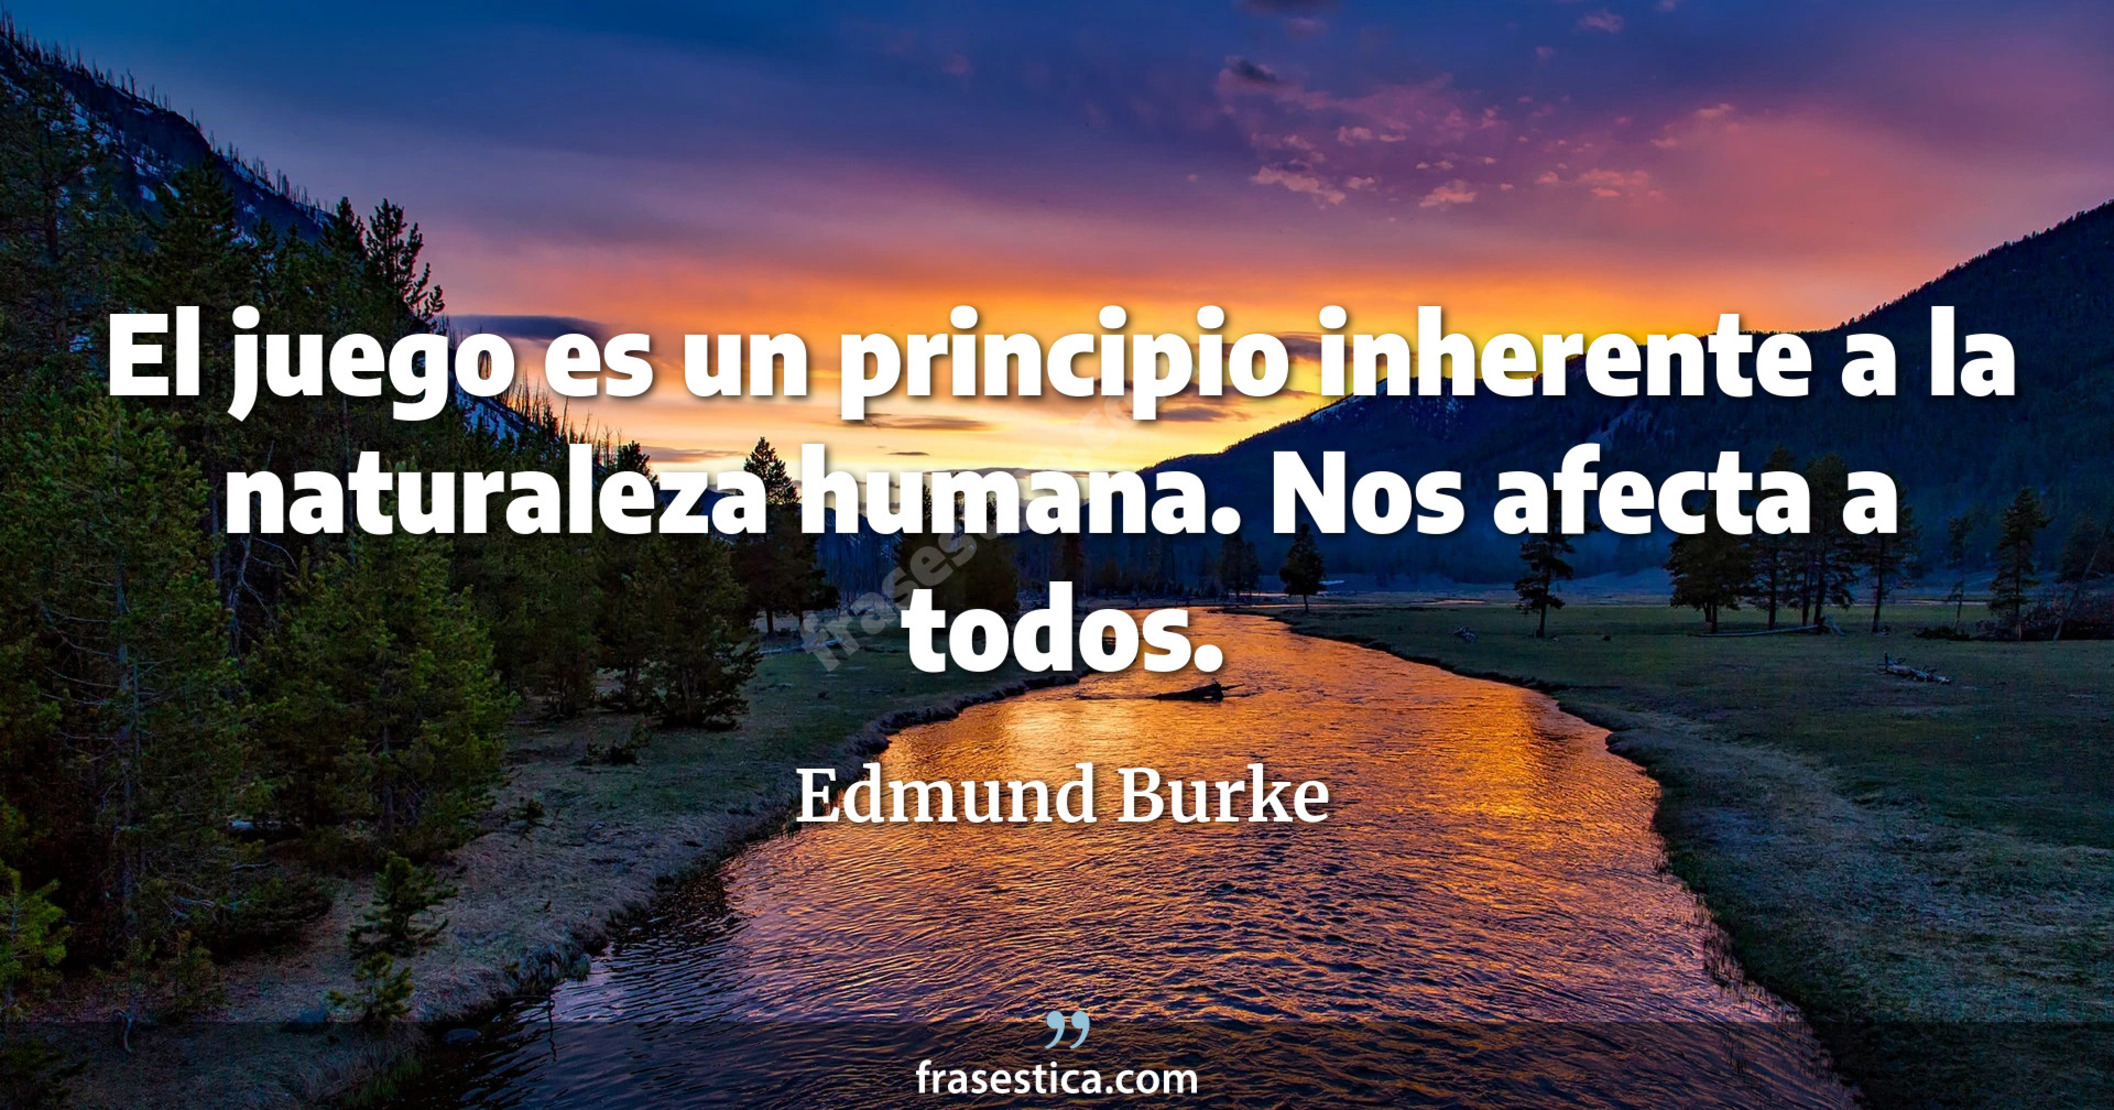 El juego es un principio inherente a la naturaleza humana. Nos afecta a todos. - Edmund Burke